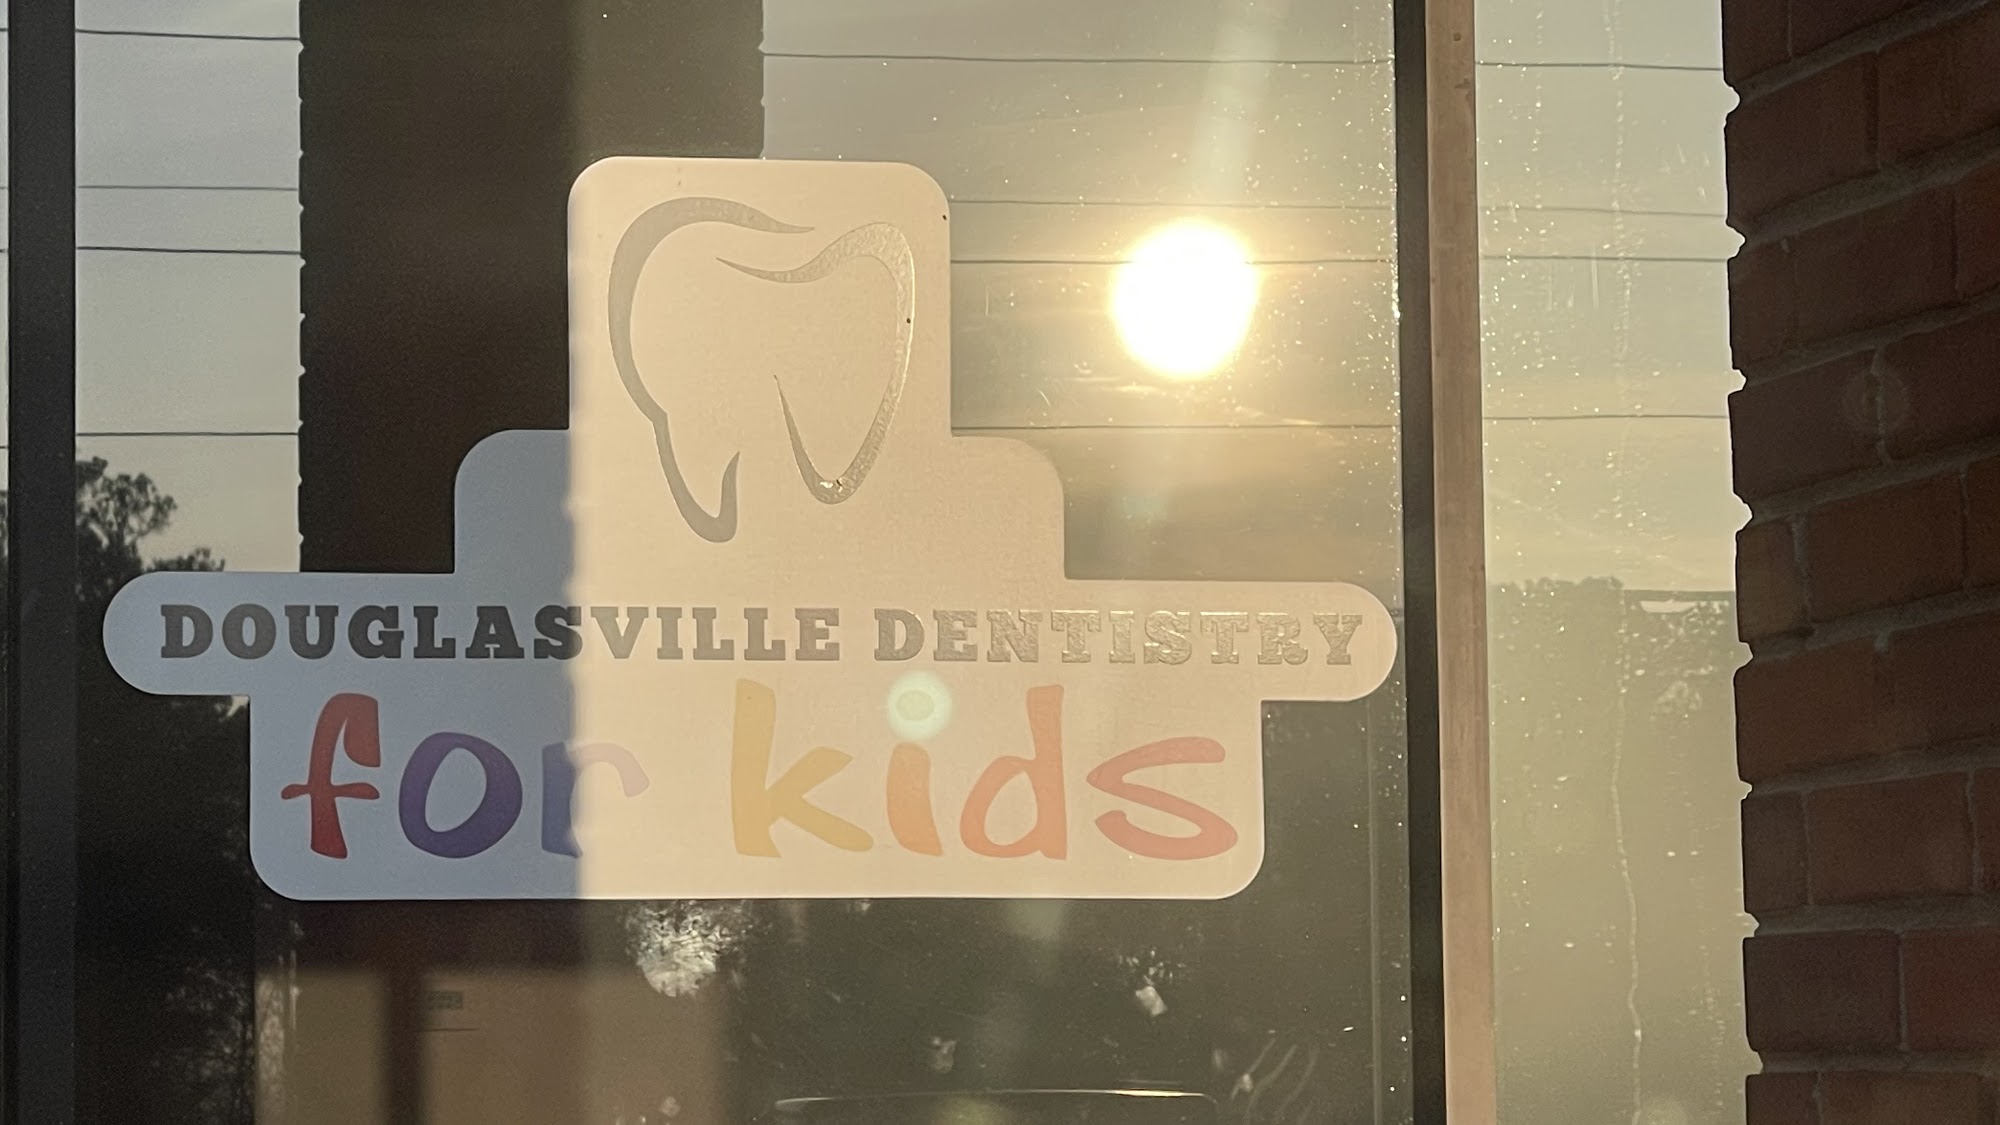 Douglasville Dentistry & Orthodontics for Kids